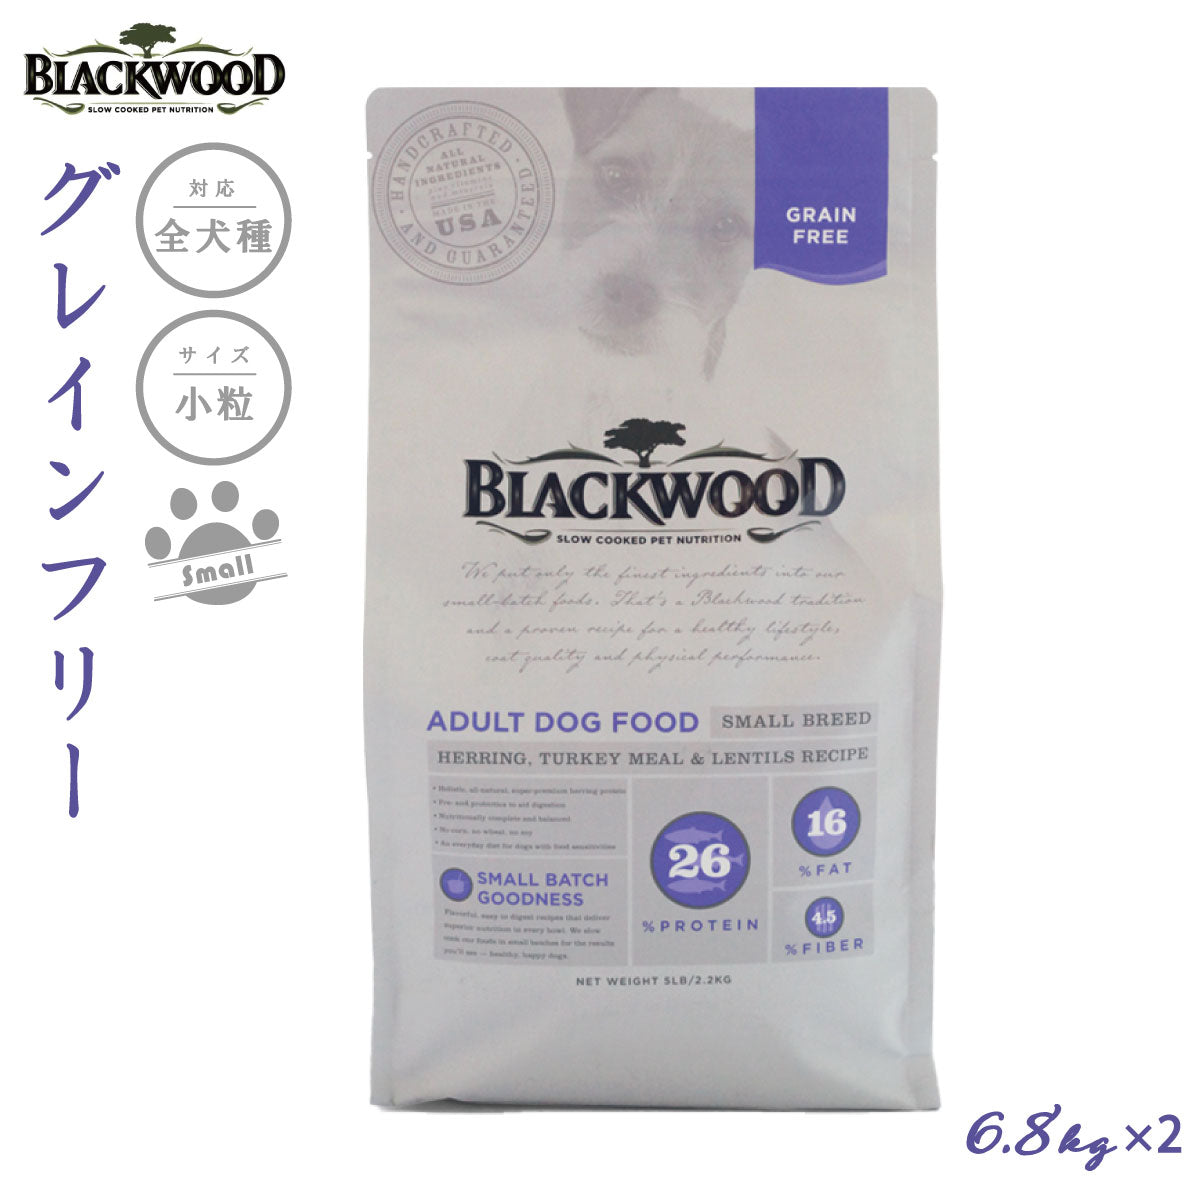 ブラックウッド BLACKWOOD ドッグフード グレインフリー スモールブリード 6.8kg×2個【送料無料】 成犬・高齢犬用 穀物不使用 無添加